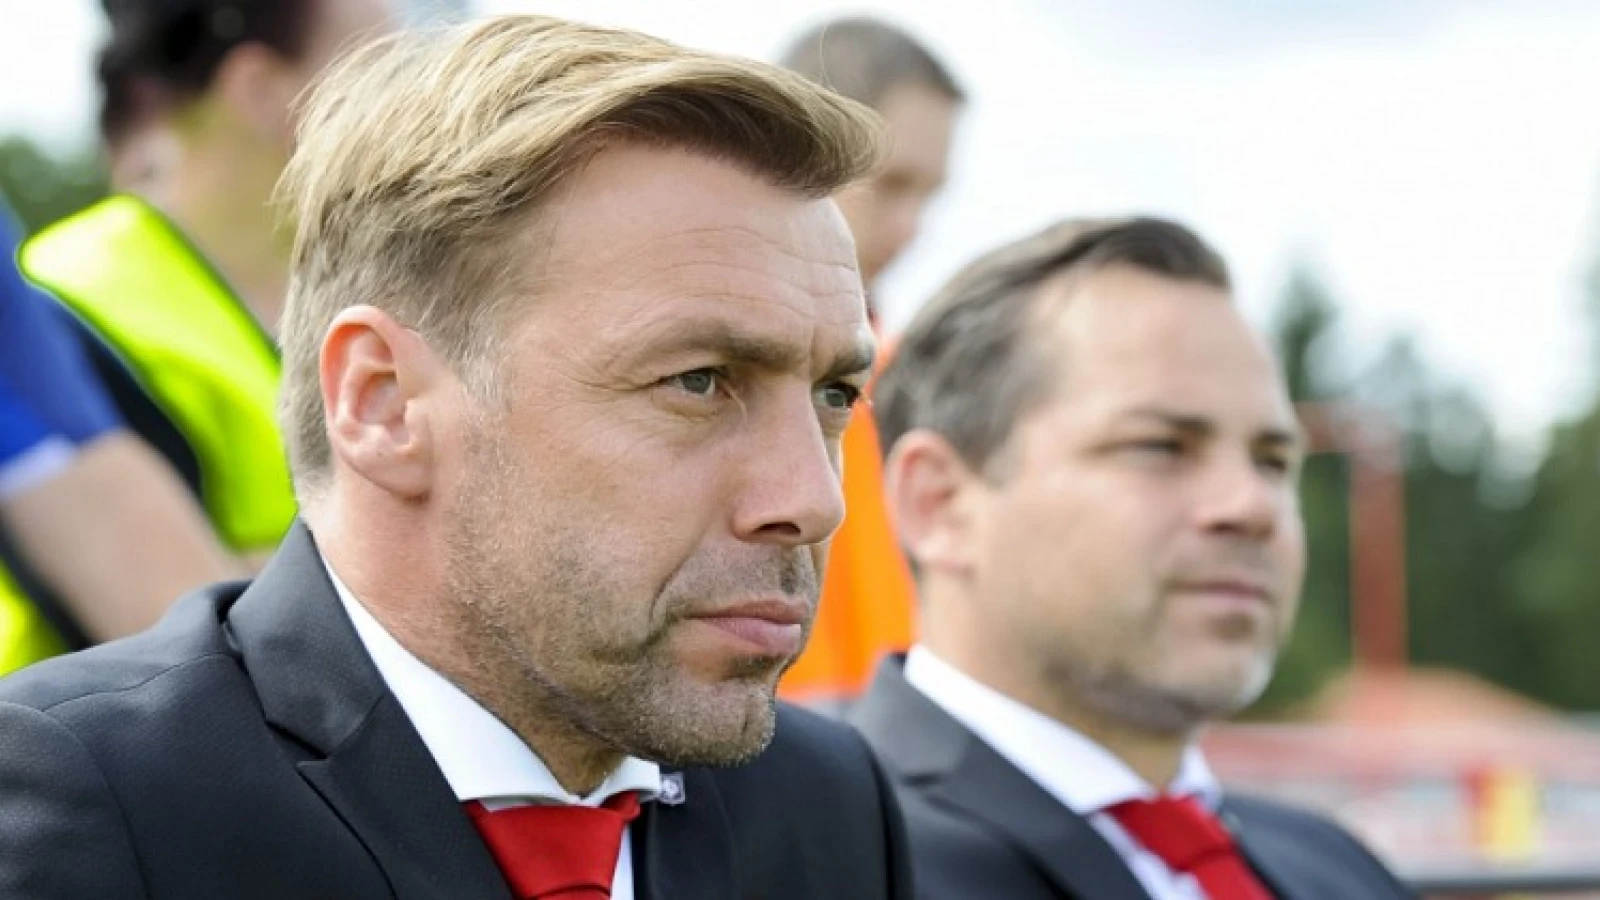 Bosvelt vertrouwt Feyenoord: 'Ik denk niet dat Feyenoord verliest in de ArenA'